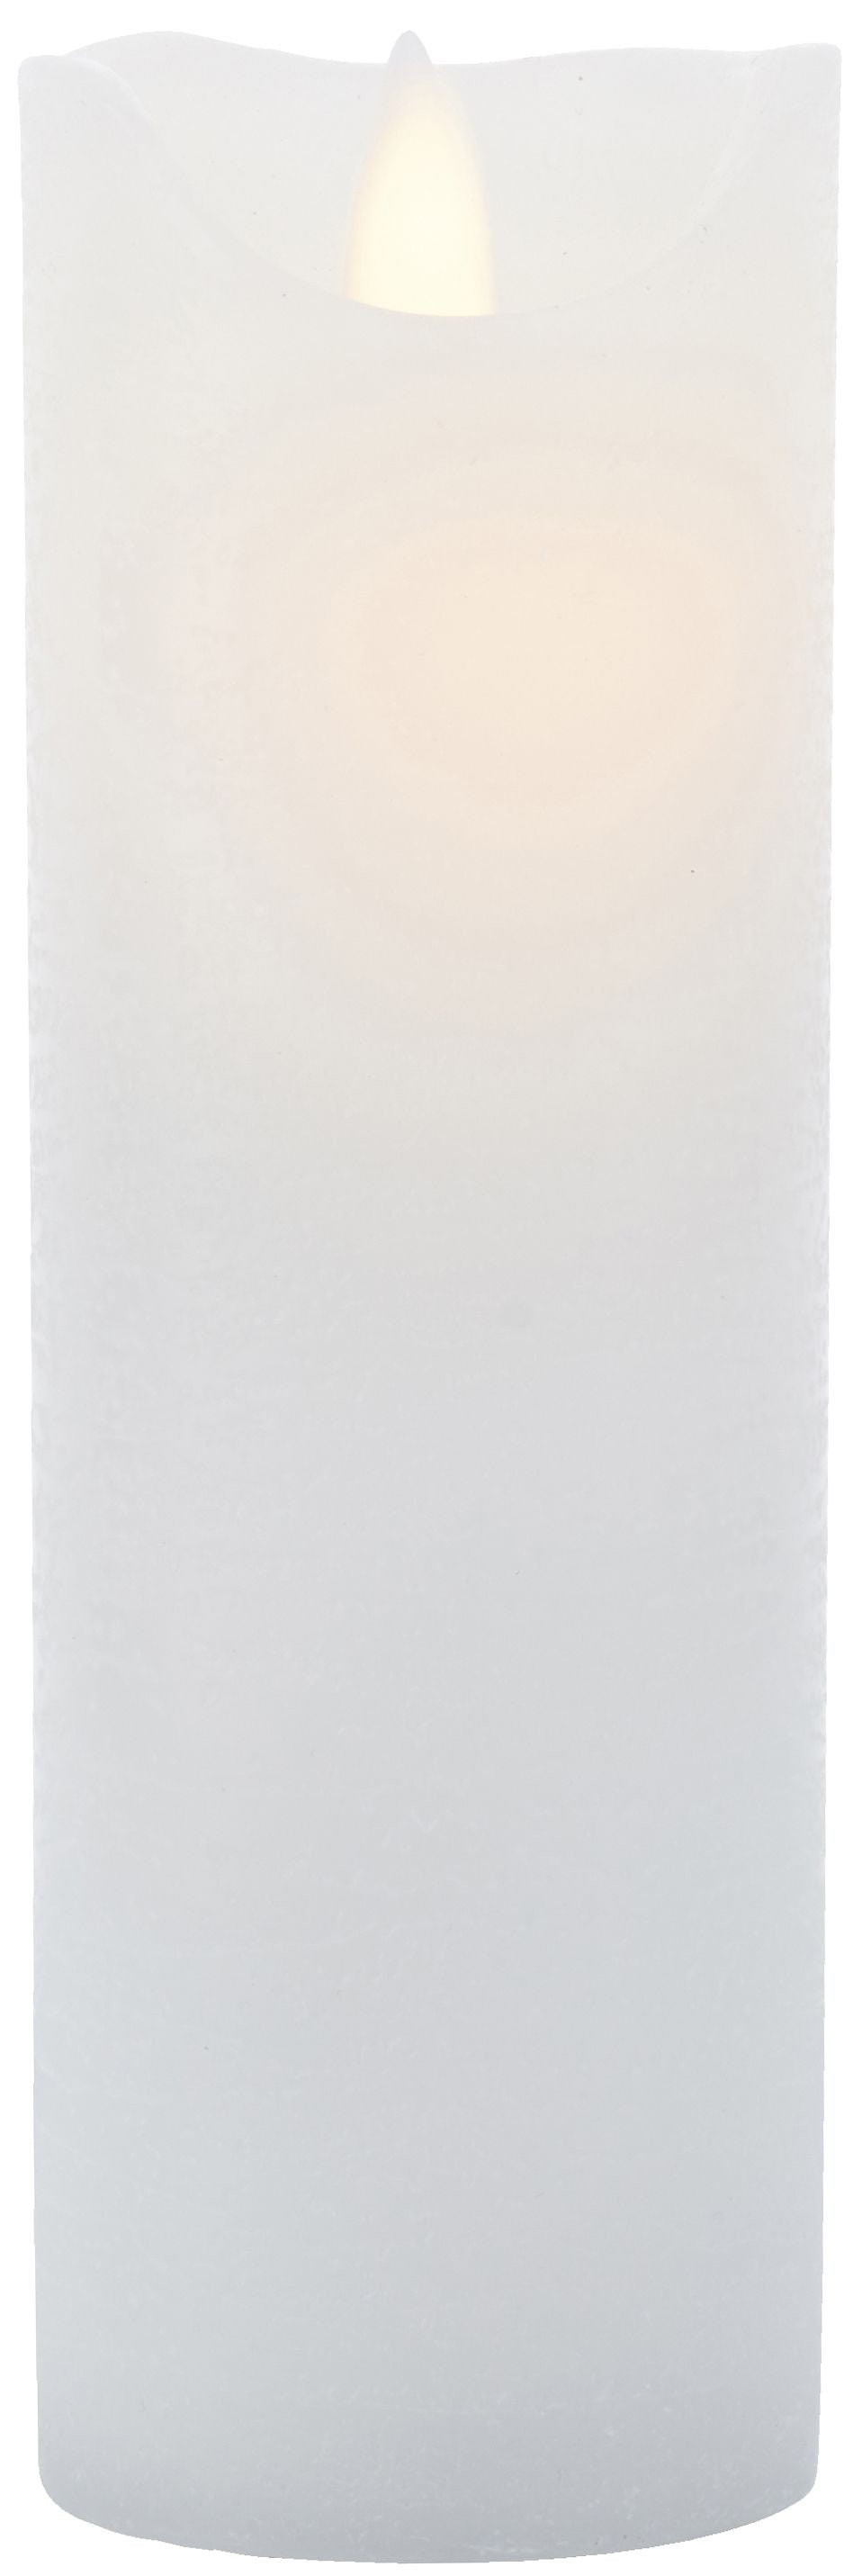 Sirius Sara oppladbar LED -stearinlyshvit, Ø7,5X H20cm